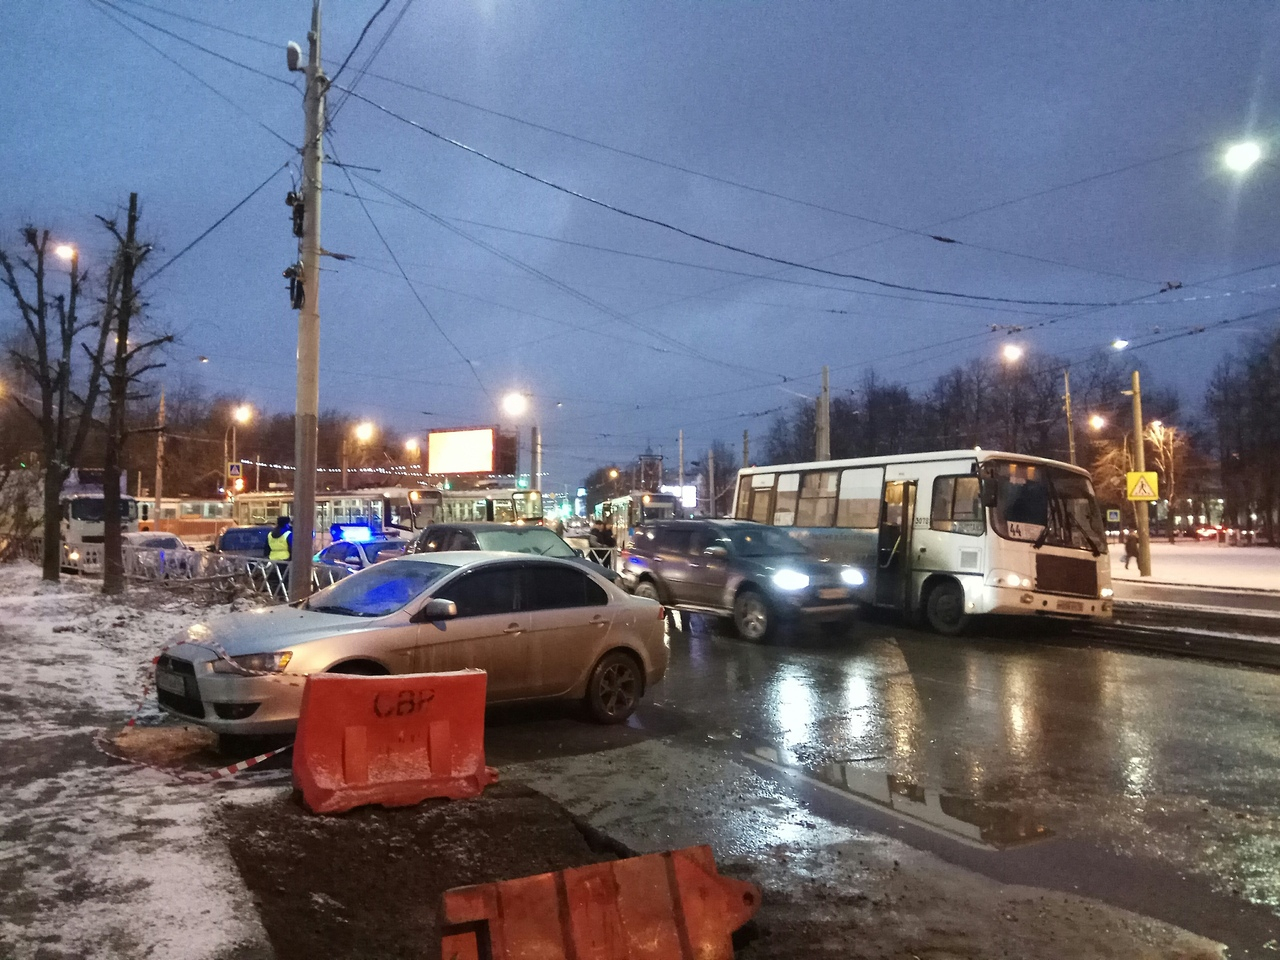 Перекрыли движение: пазик упал на трамвайные пути в центре Ярославля